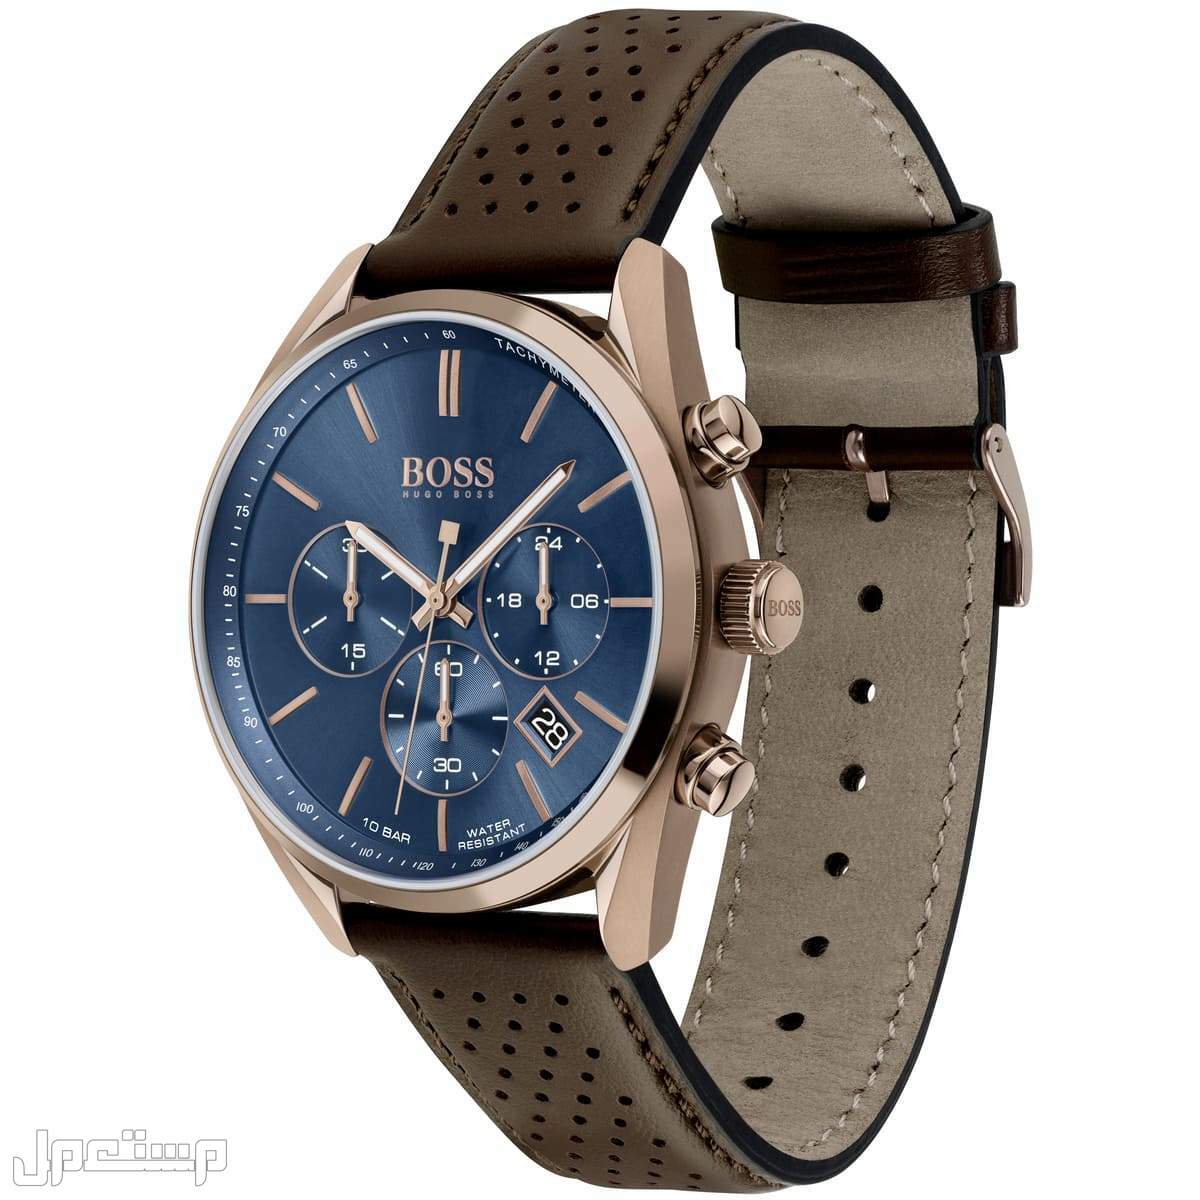 أفضل ساعات بوس Boss الأكثر مبيعا هذا العام وأسعارها في ليبيا ساع 1513817-hugo-boss-watch-men-blue-dial-leather-brown-strap-quartz-analog-chro